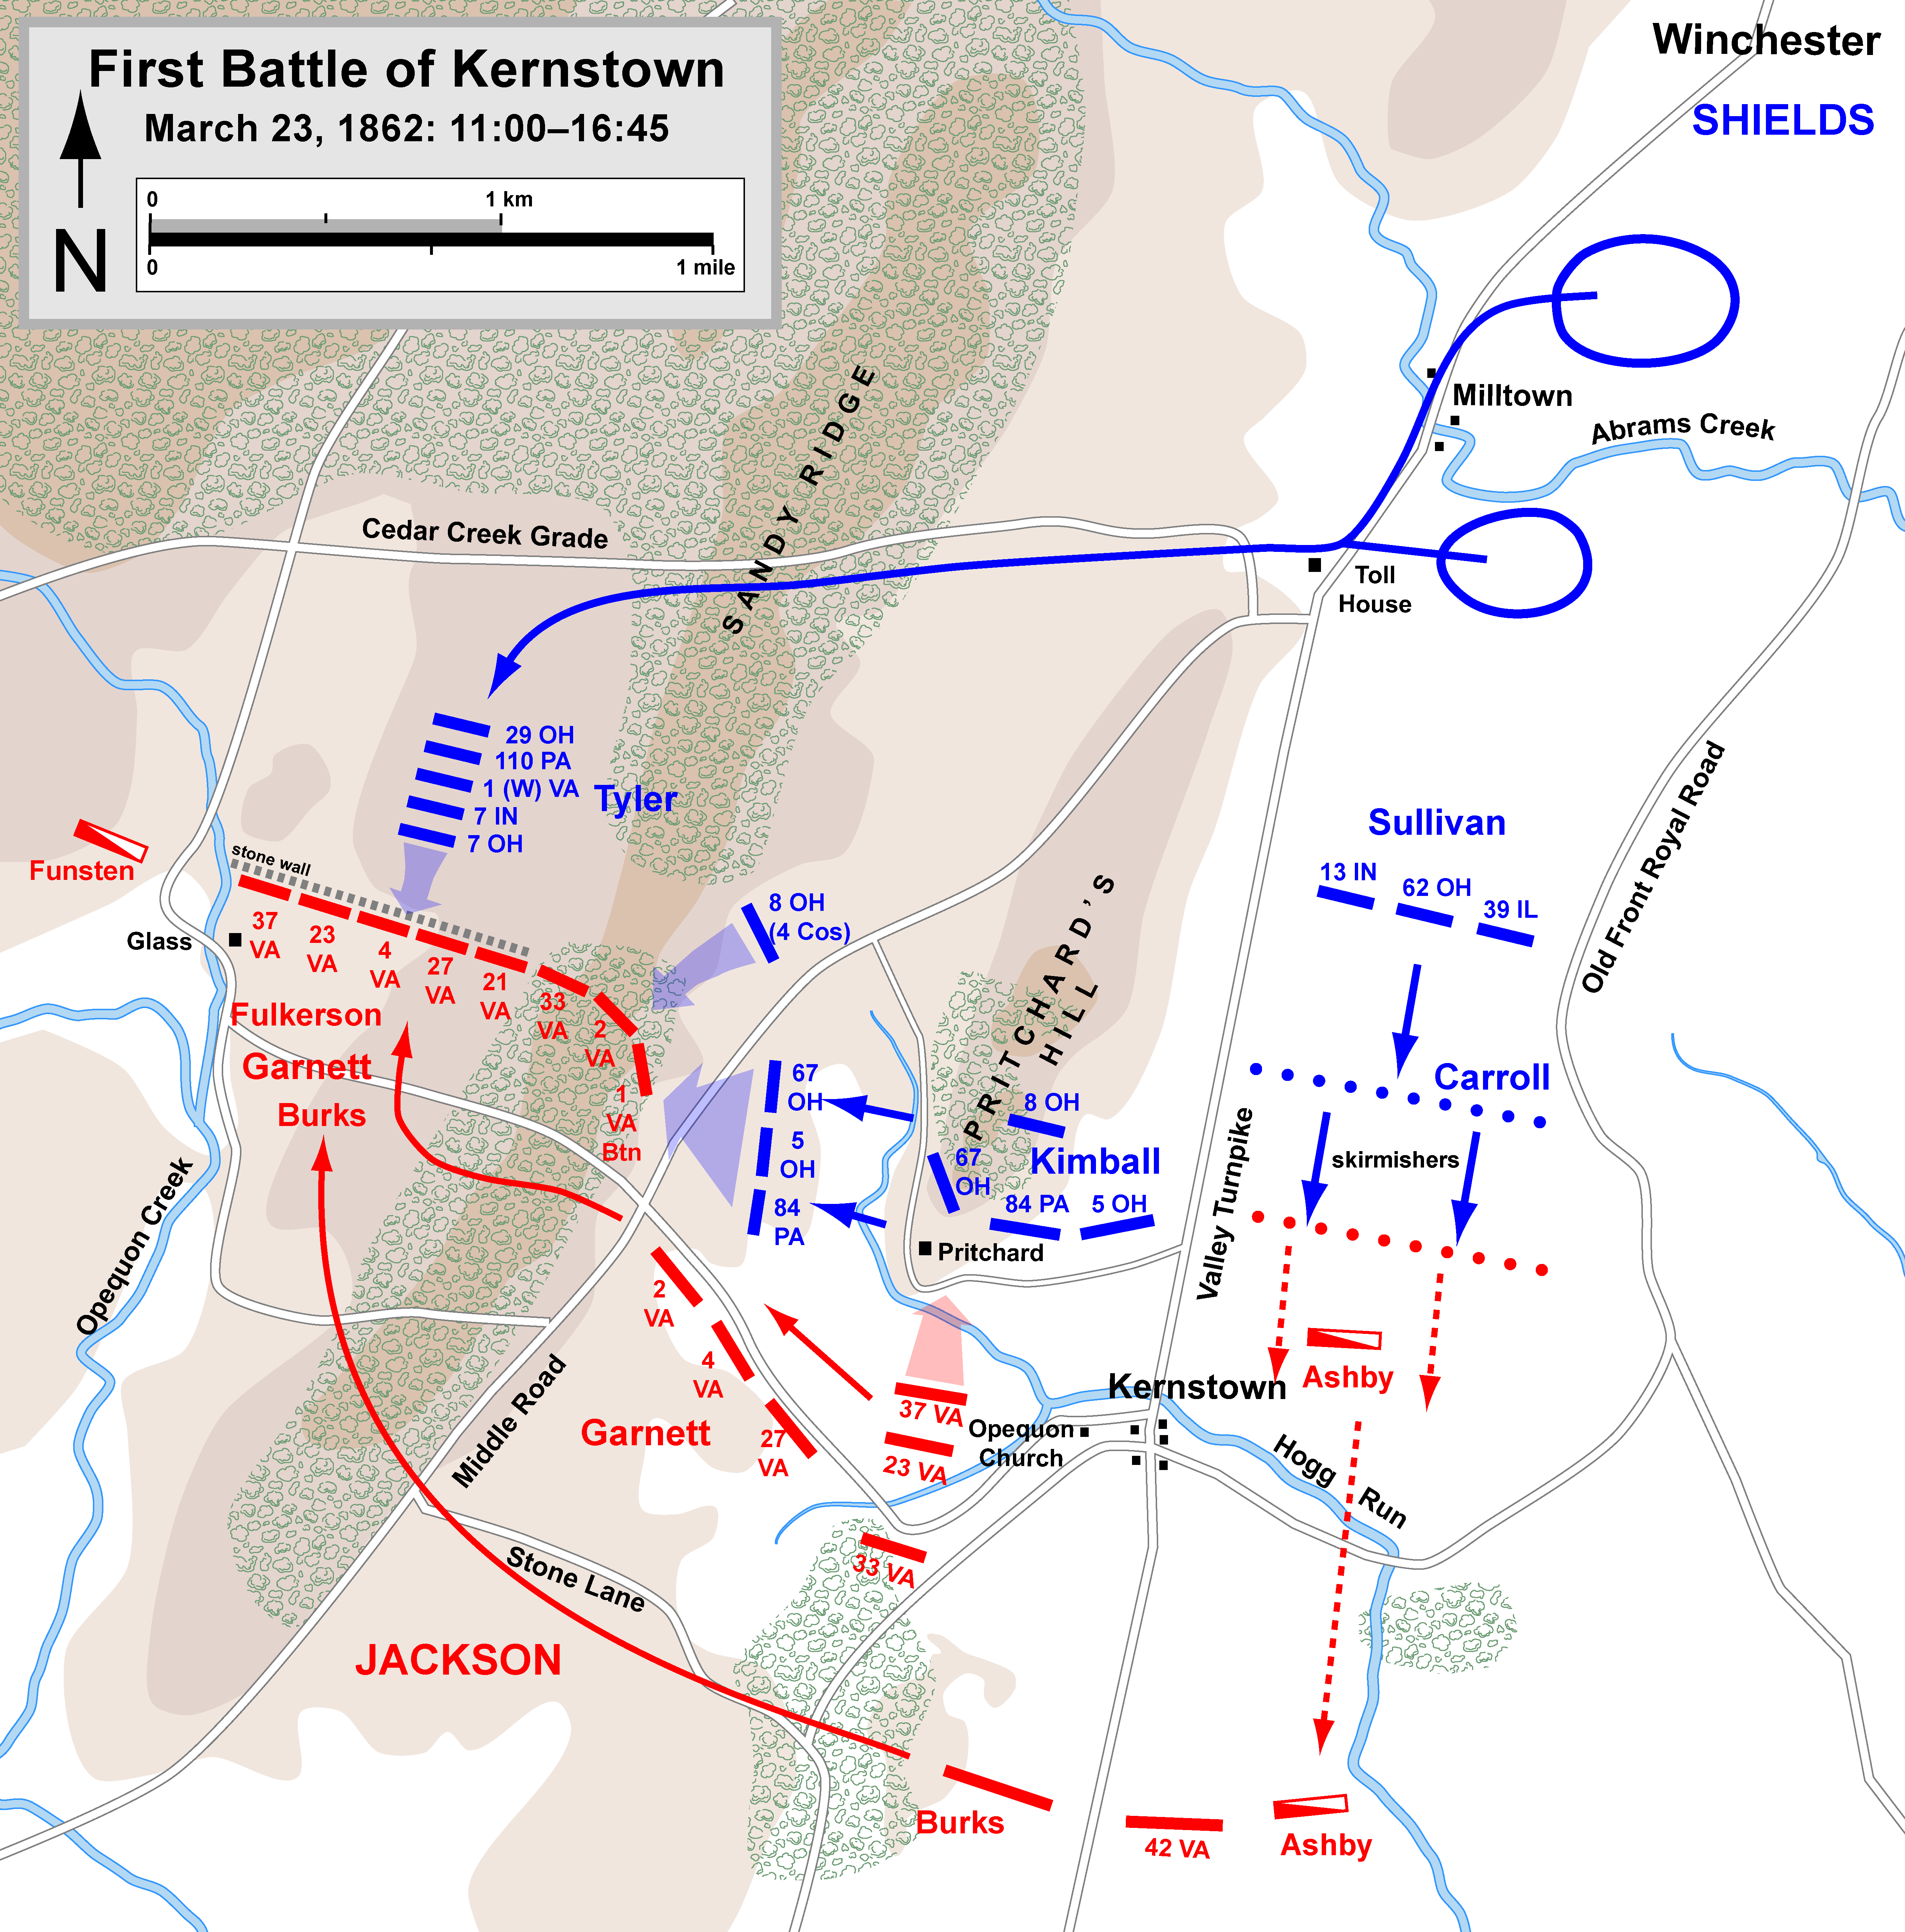 First Battle of Kernstown